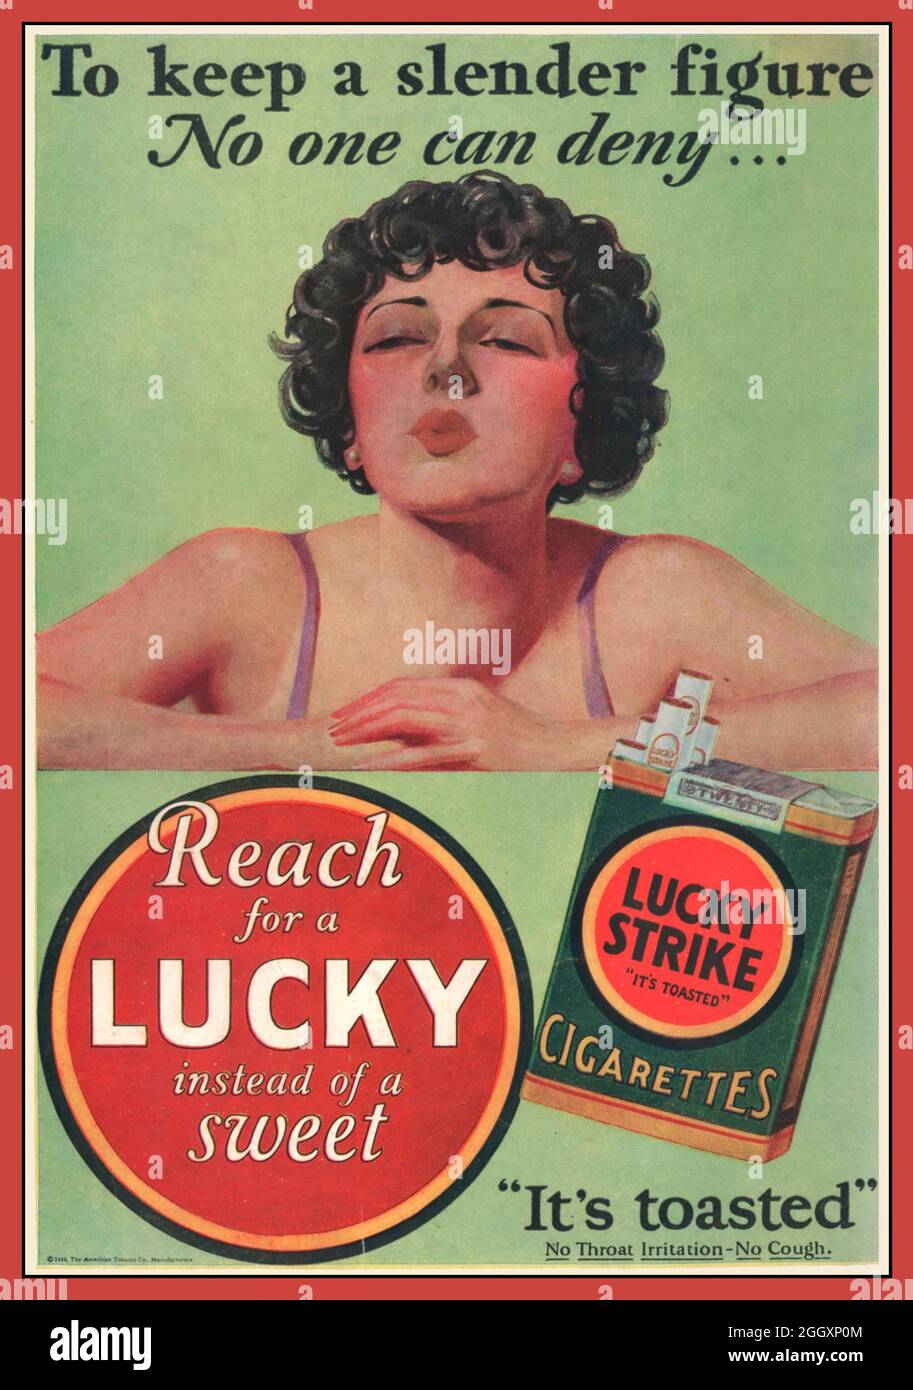 1929 Vintage Lucky Strike Cigarette Pubblicità suggerendo di fumare invece di mangiare un dolce per una figura più sottile. Nessuna irritazione alla gola, nessuna tosse America USA. "Per mantenere una figura snella" anni '20 Foto Stock